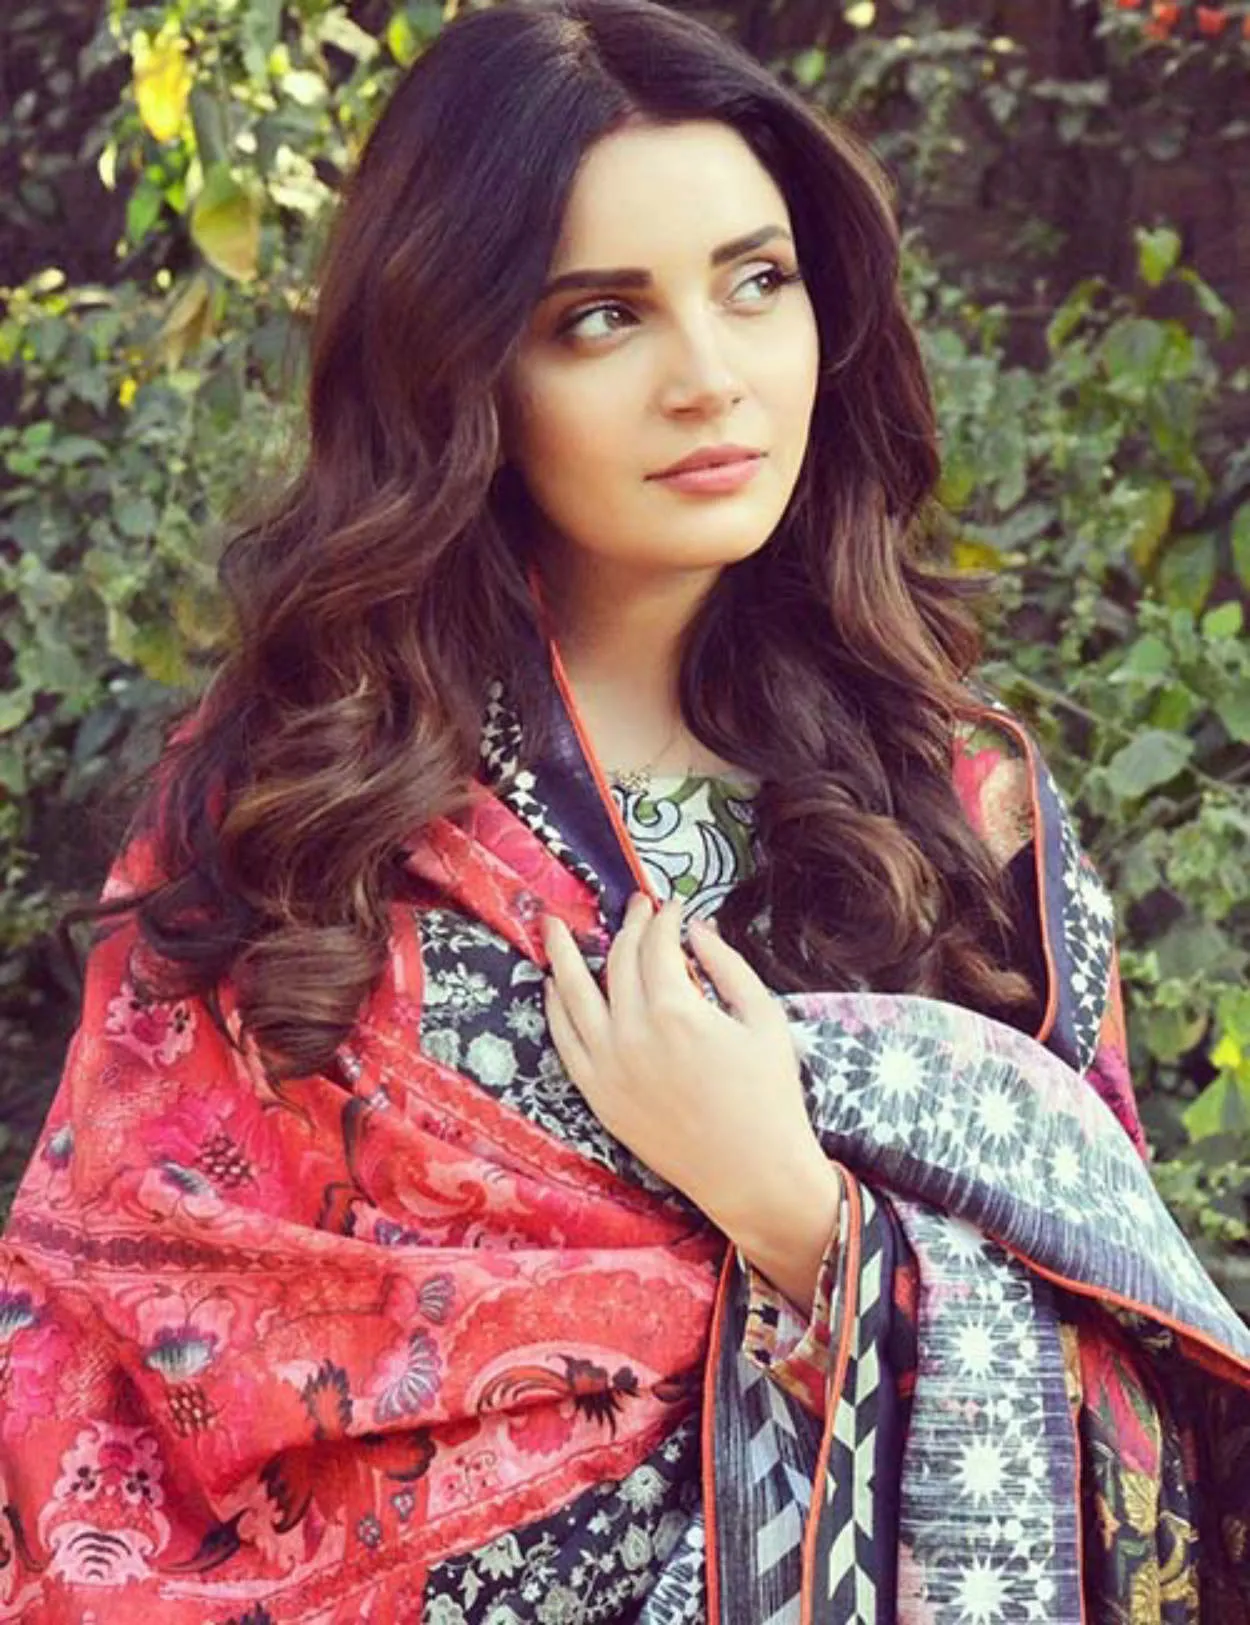 Multan (Pakistan) beautiful woman or selebgram